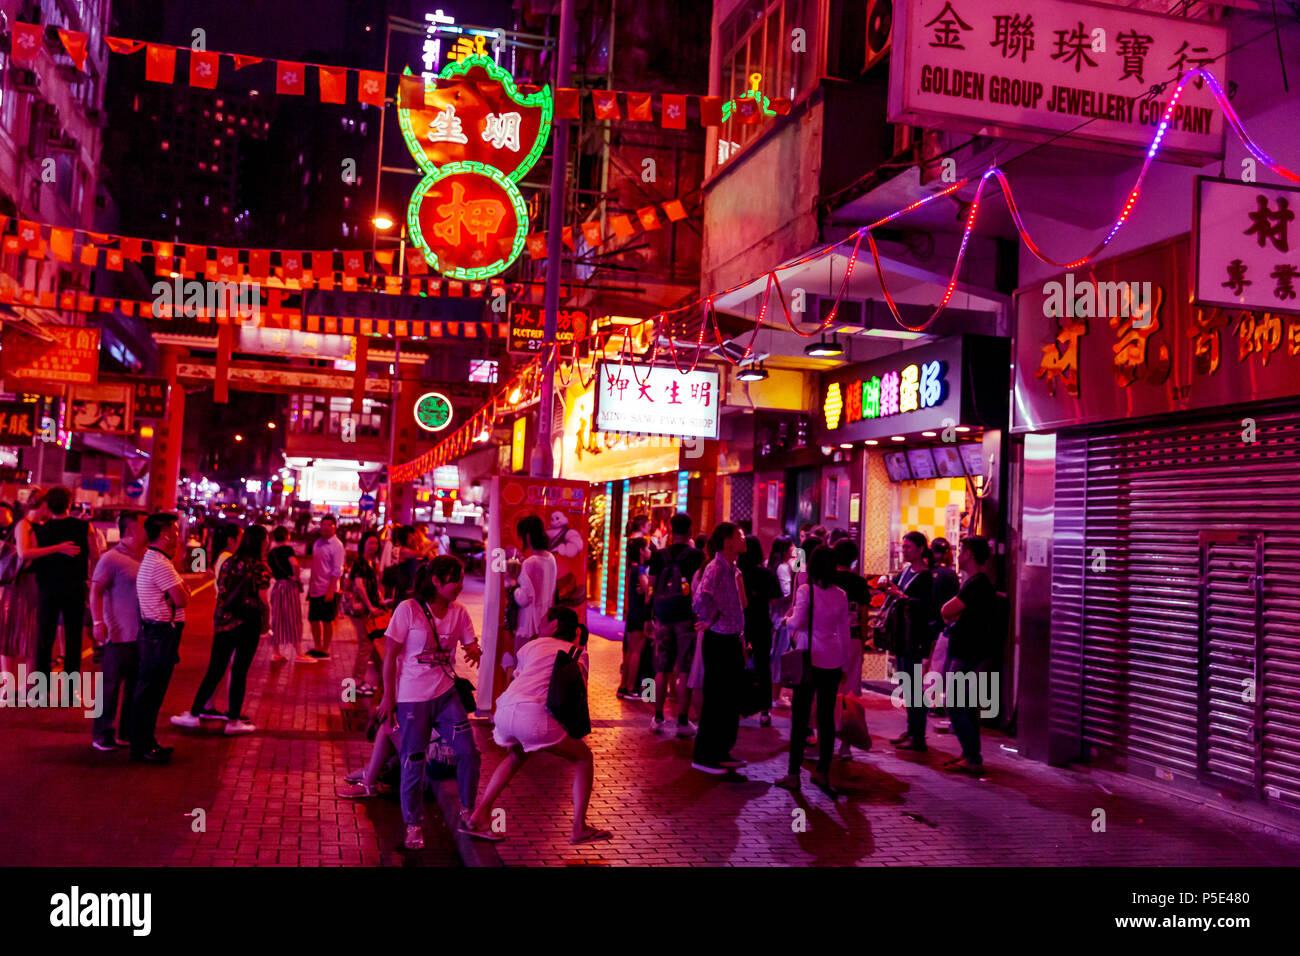 HONG KONG - JUNE 01, 2018: People shopping at night on pink neon streets in Hong Kong Stock Photo